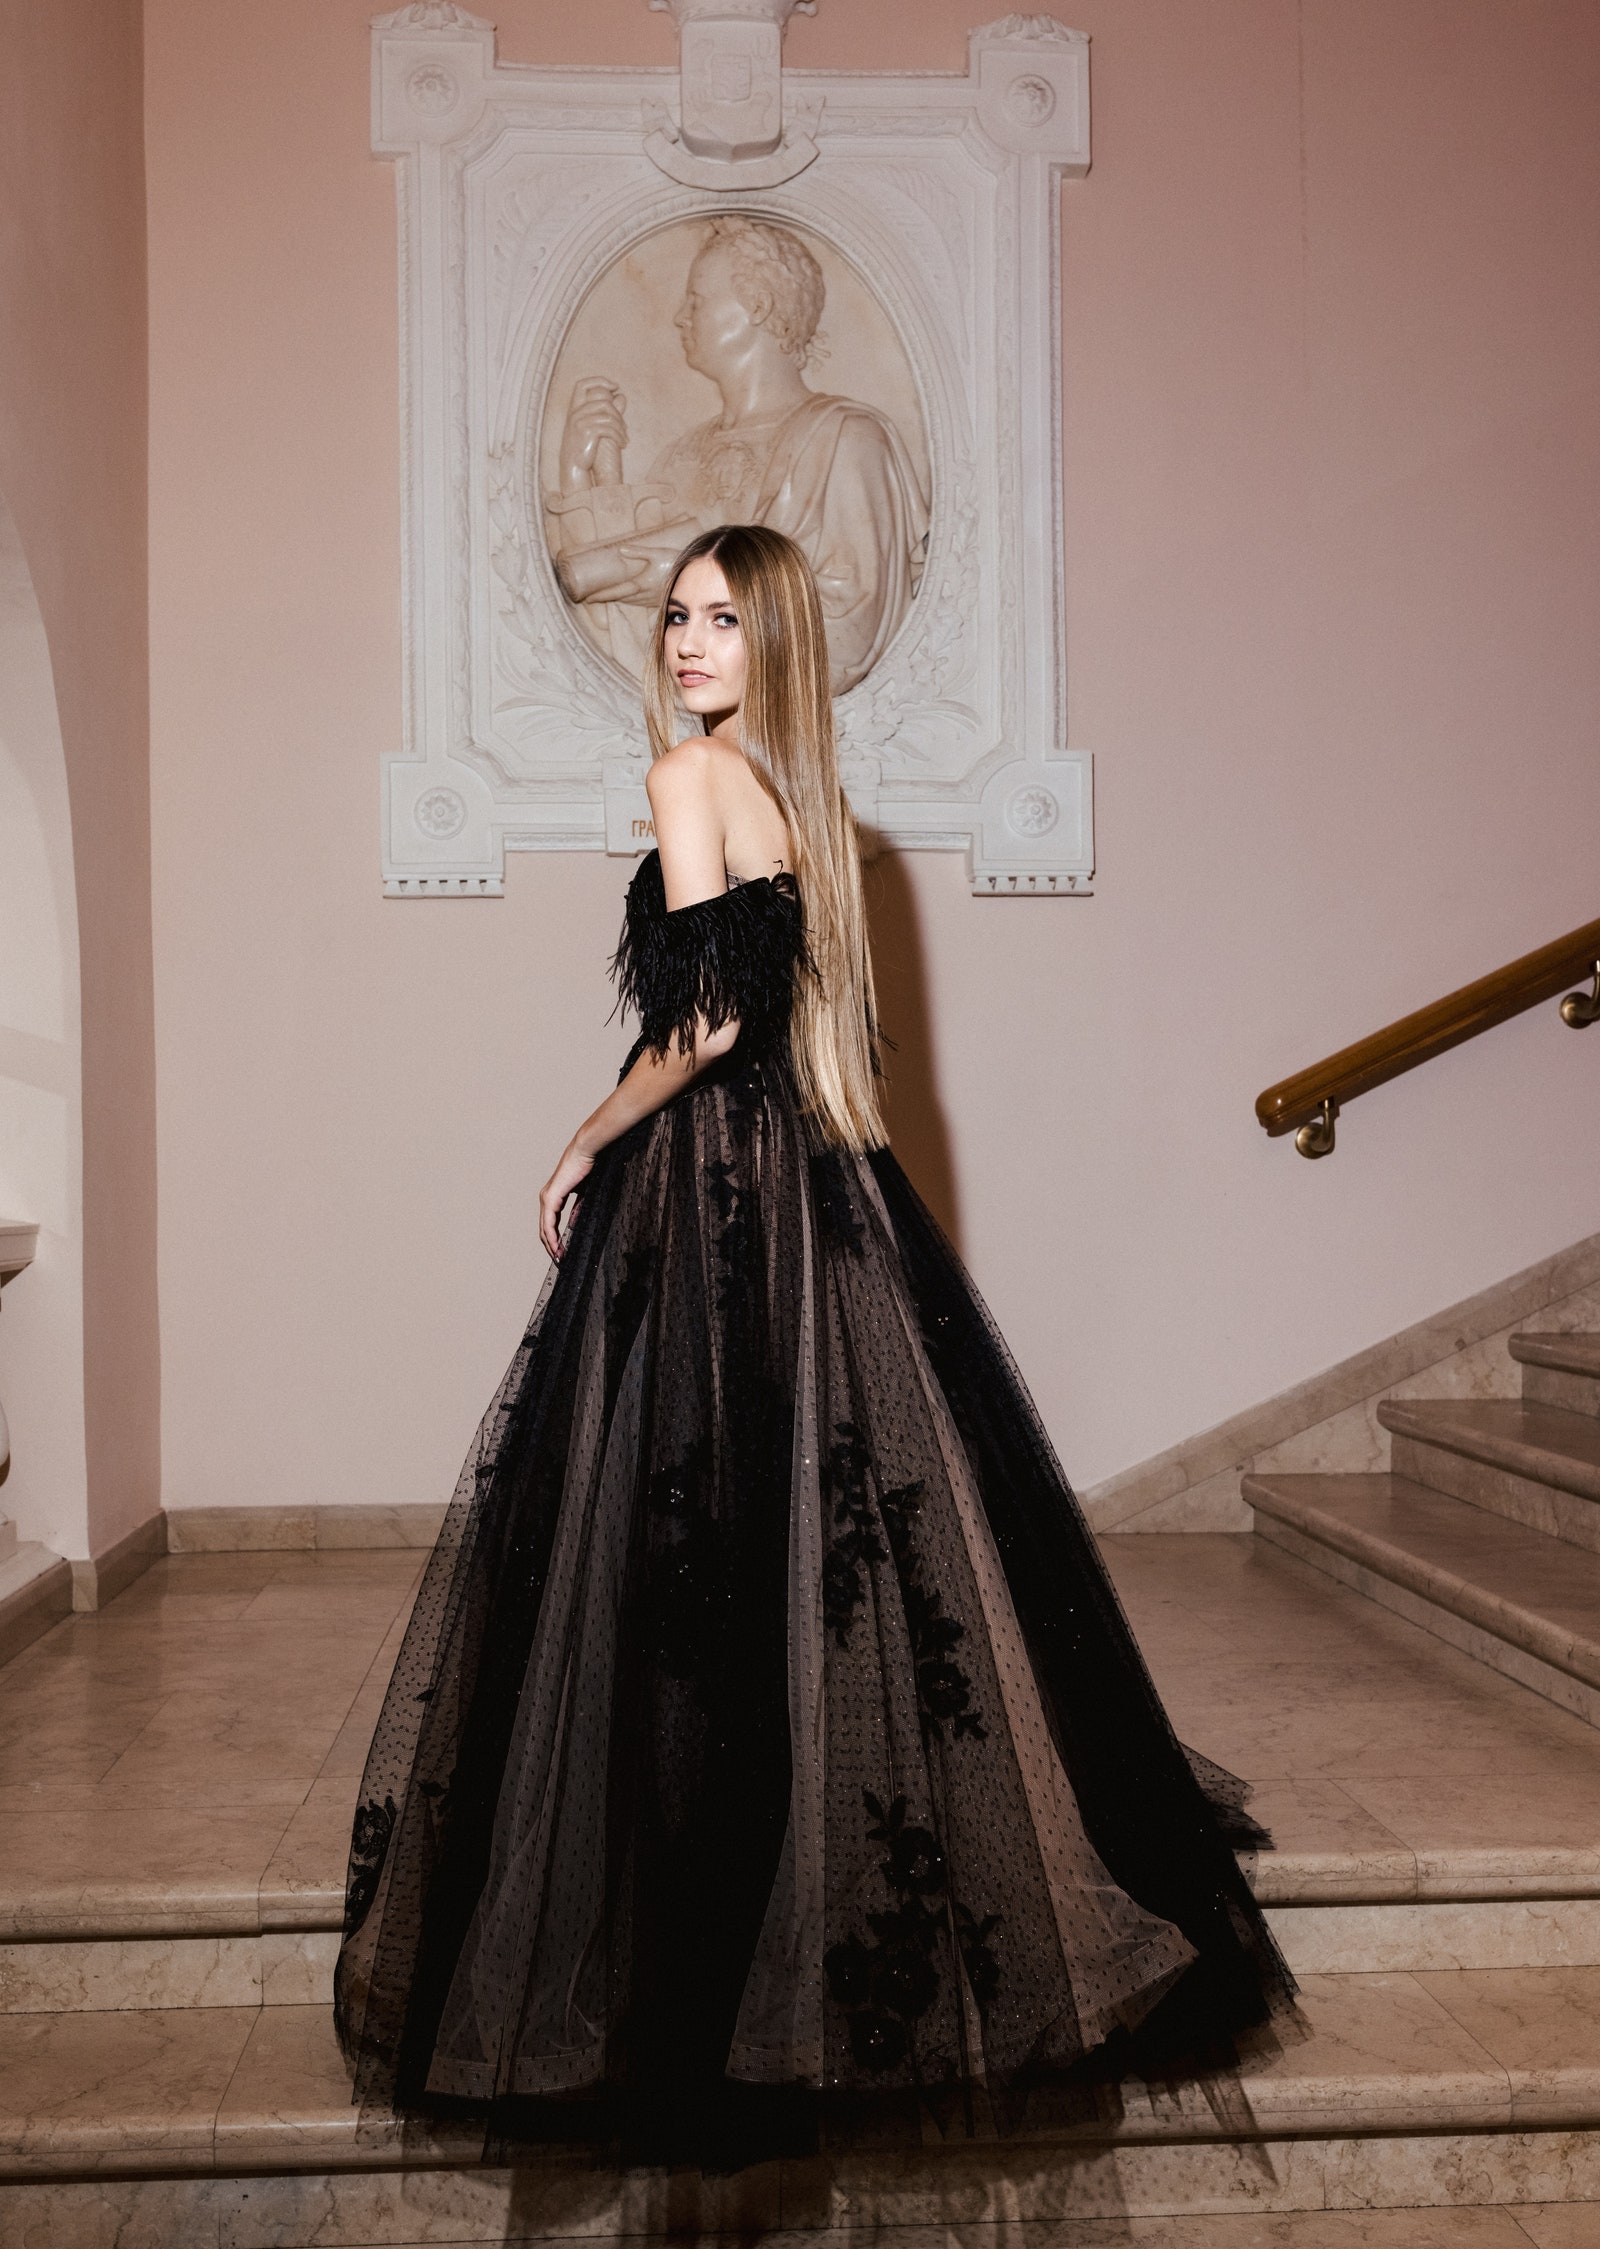 Вероника Расковалова в платье Yana Dress и украшениях Mercury макияж Dolce amp Gabbana Beauty